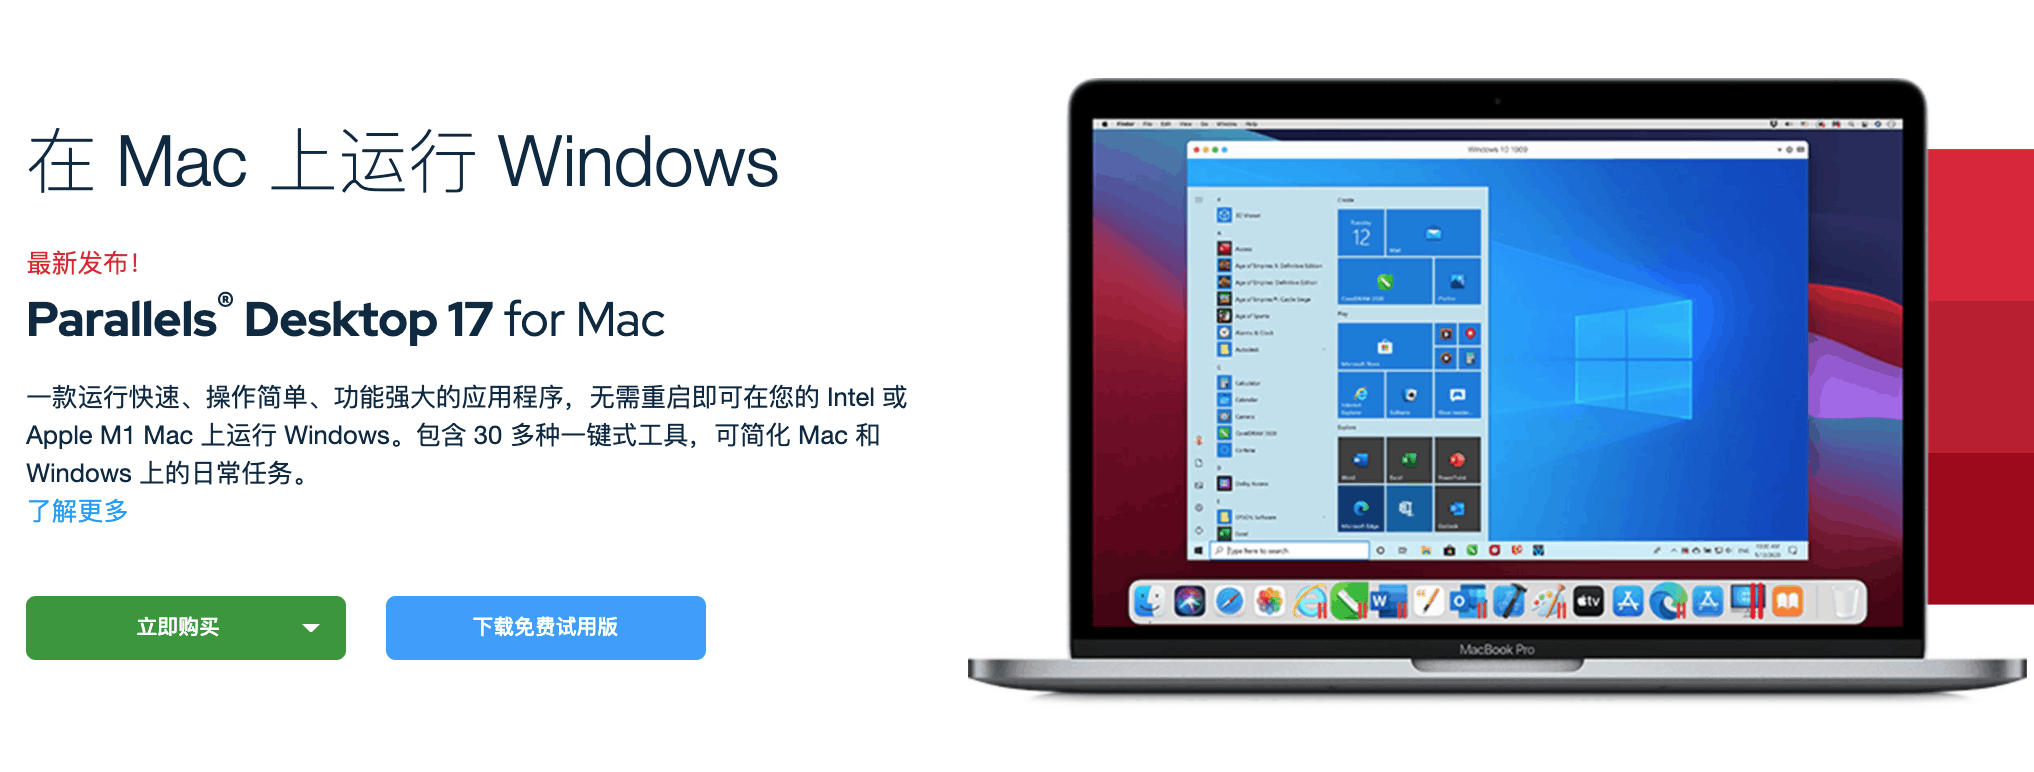 Parallels 17发布-Parallels Desktop 17-pd 17 支持运行Windows 11系统 M1  Windows 11 和 macOS Montere优化 9折优惠码 Parallels Desktop 17 for mac